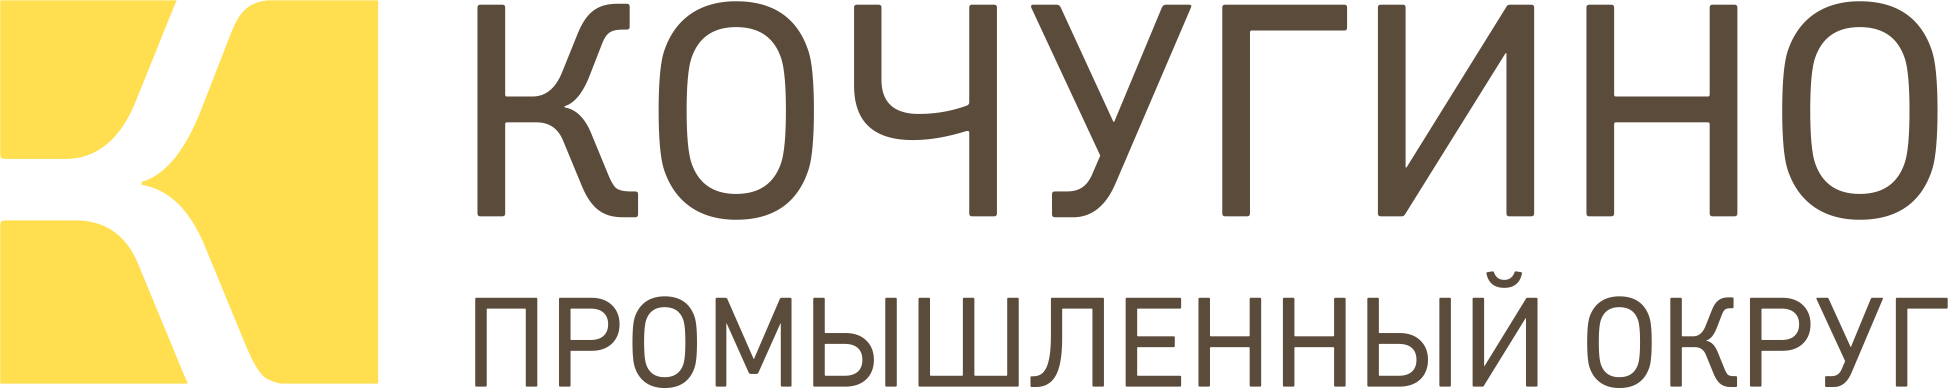 Кочугино Логотип